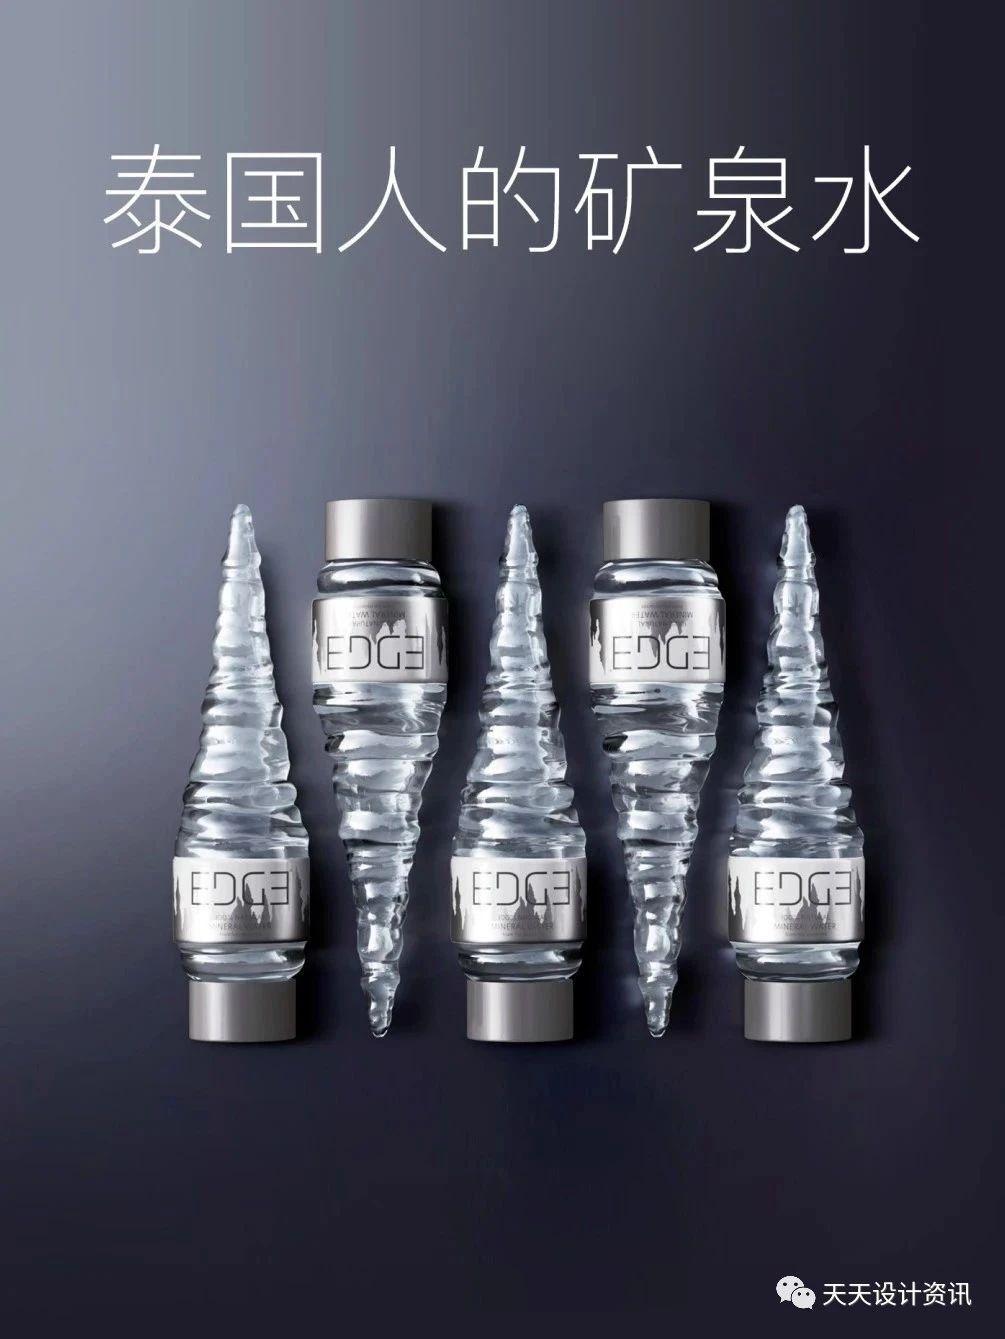 EDGE创意矿泉水瓶设计，获得众多国际奖项！